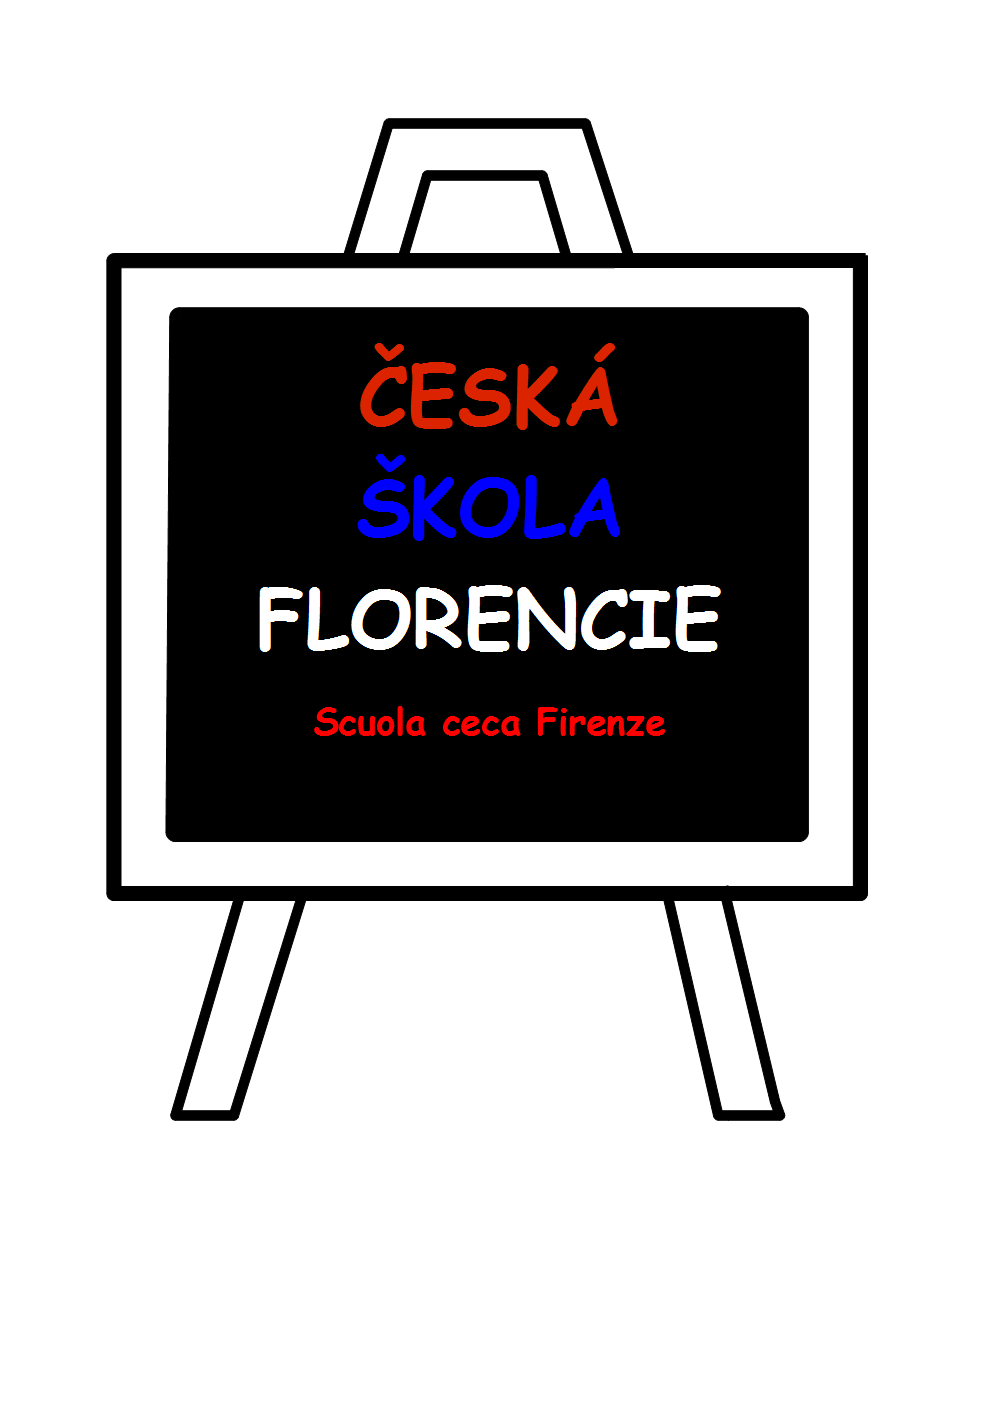 CESKA SKOLA logo